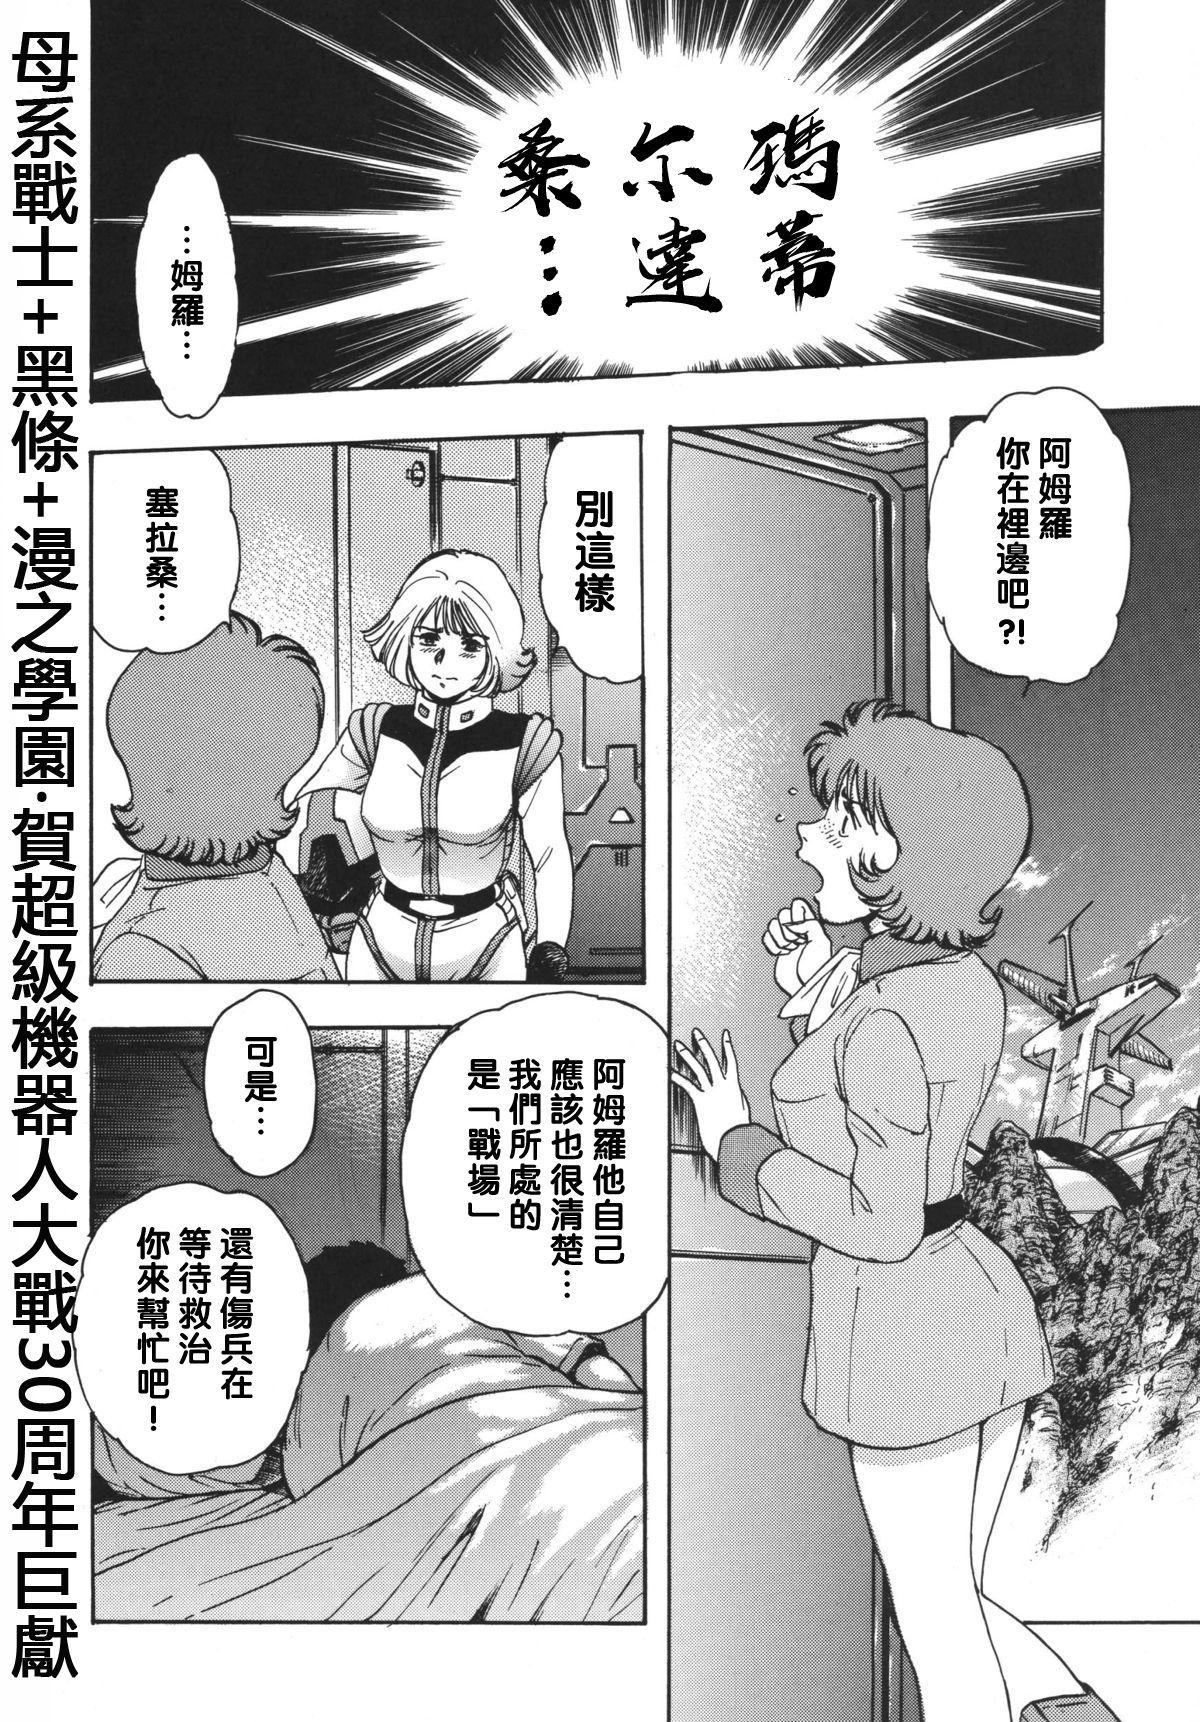 Peeing マチルタその愛夢 - Gundam Jap - Page 6